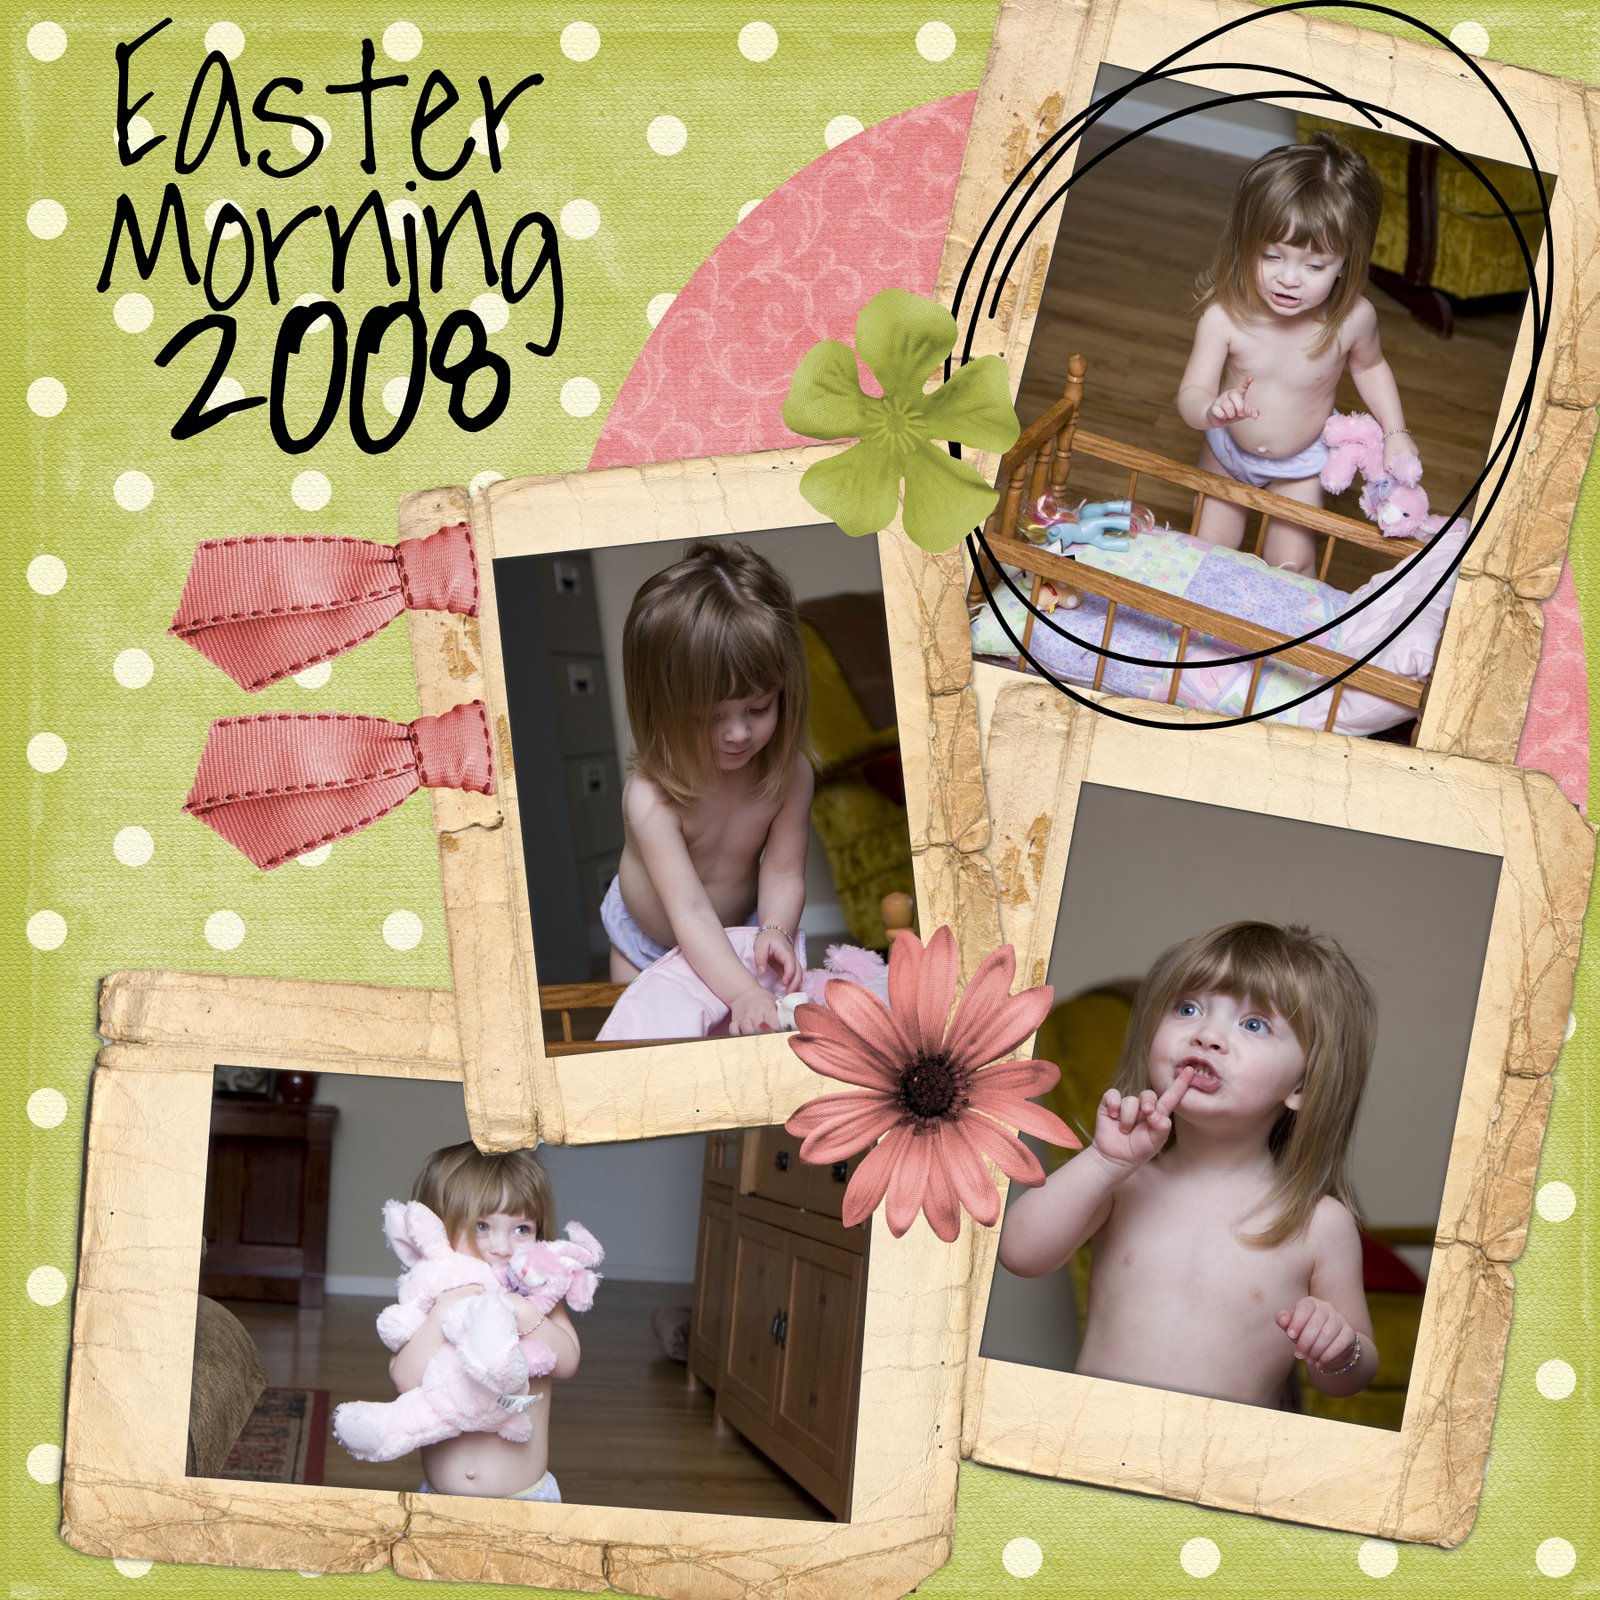 [Easter+Morning+2008+copy.jpg]